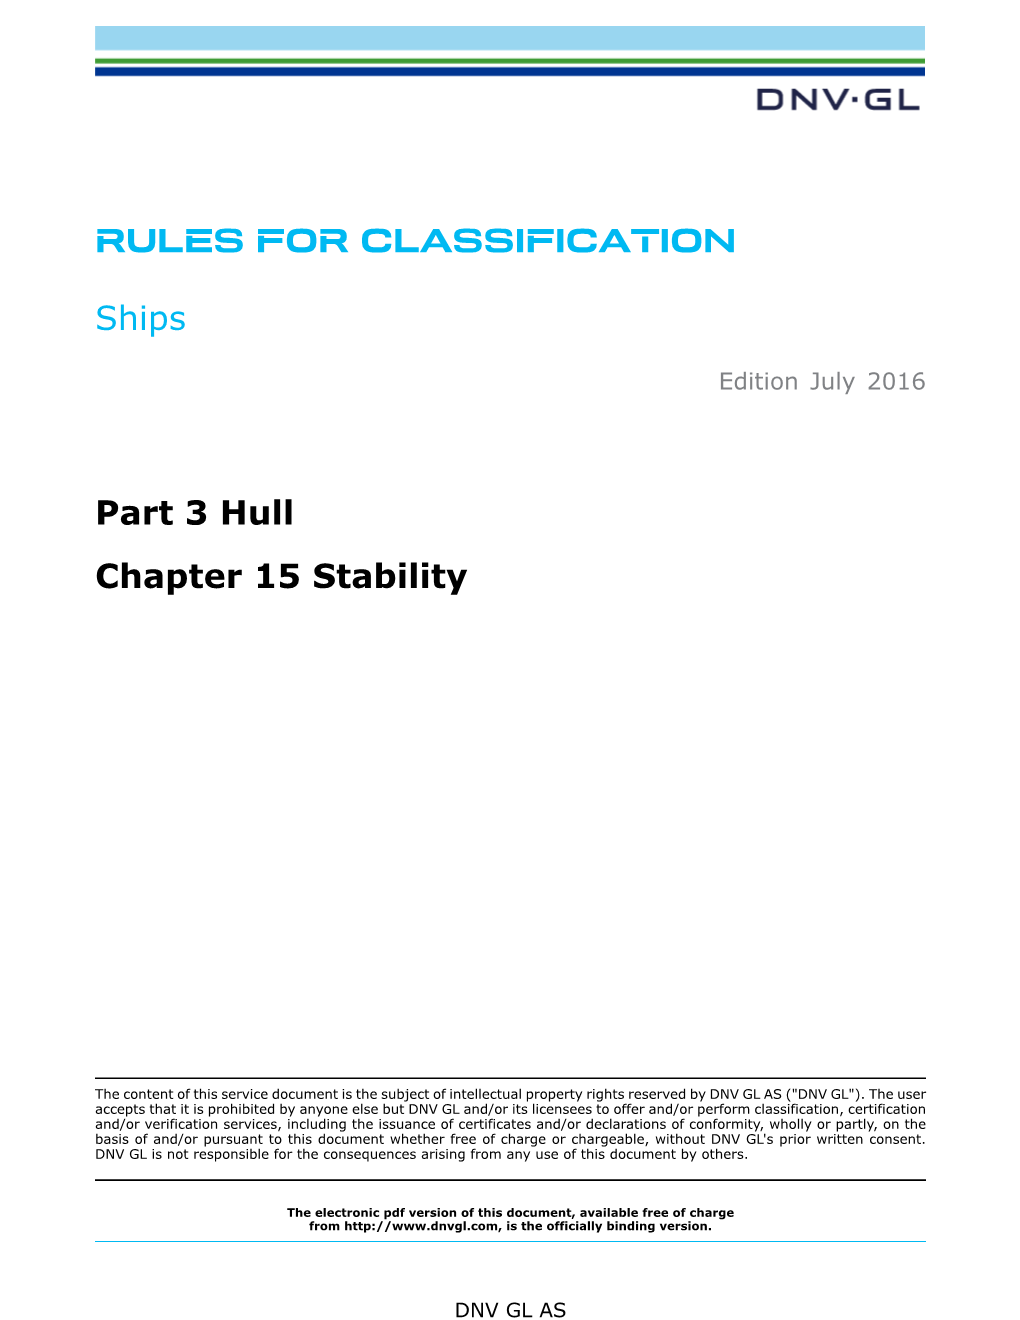 DNVGL-RU-SHIP-Pt3ch15 Stability